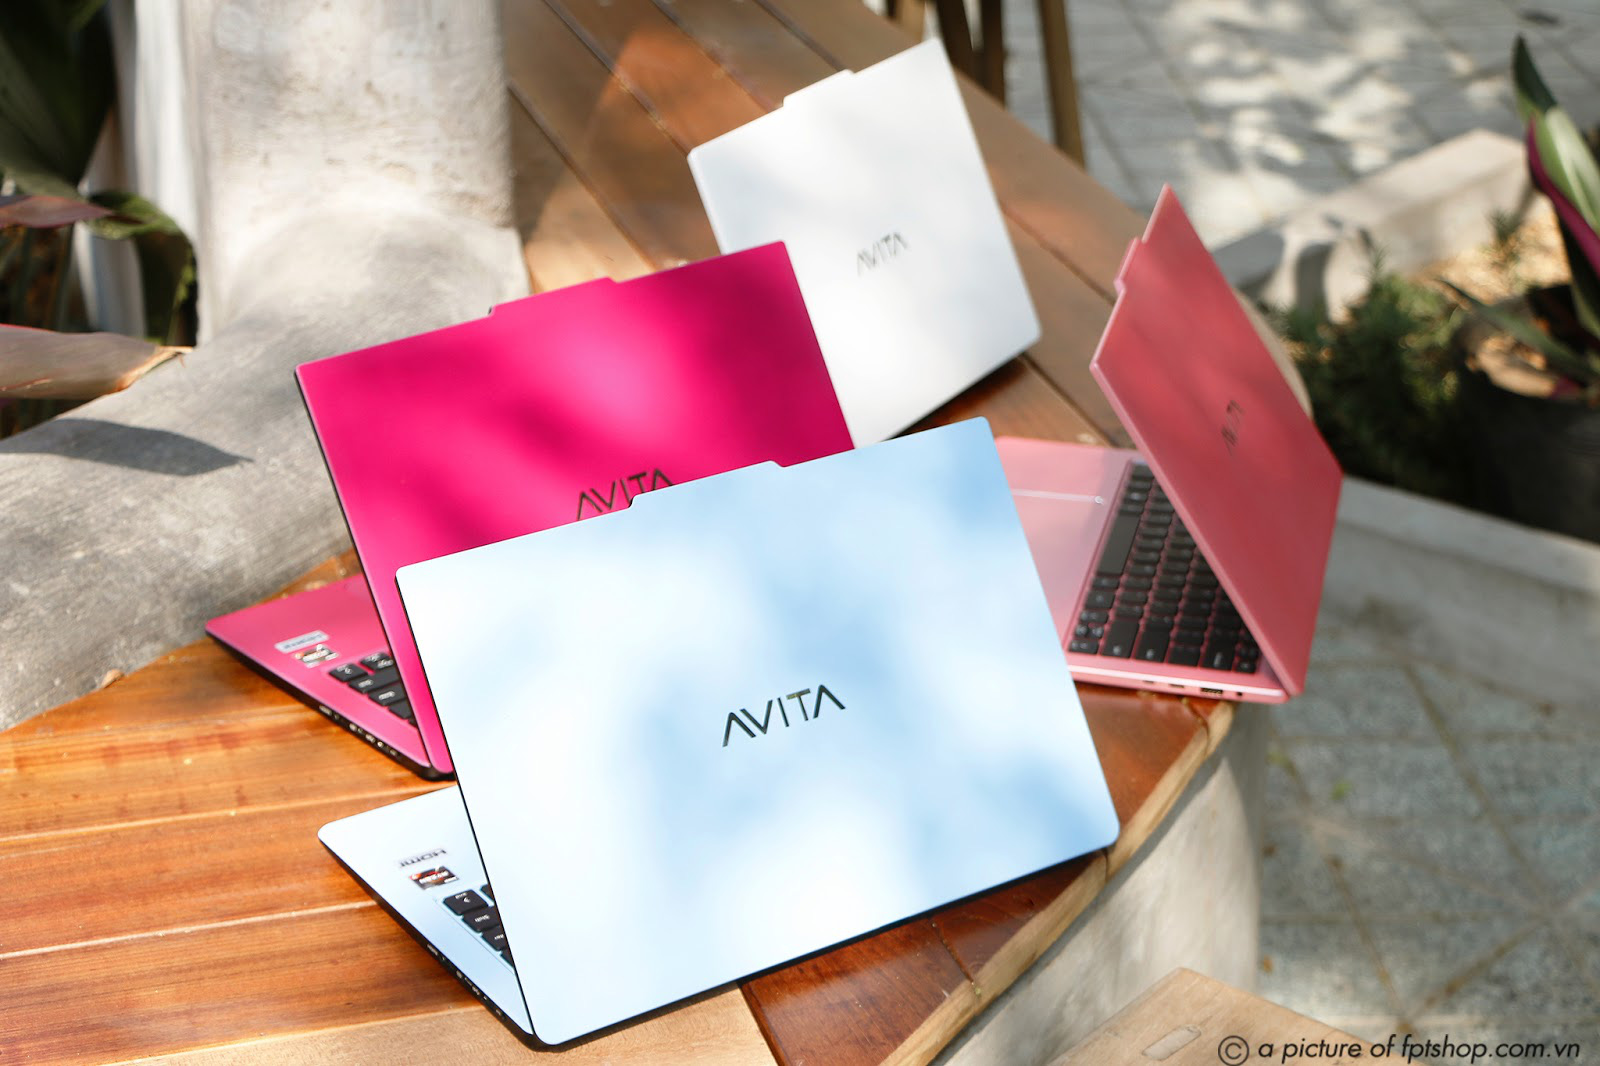 Ngắm nhìn vẻ đẹp trẻ trung của laptop AVITA, “anh em một nhà” với laptop VAIO đình đám - Ảnh 1.